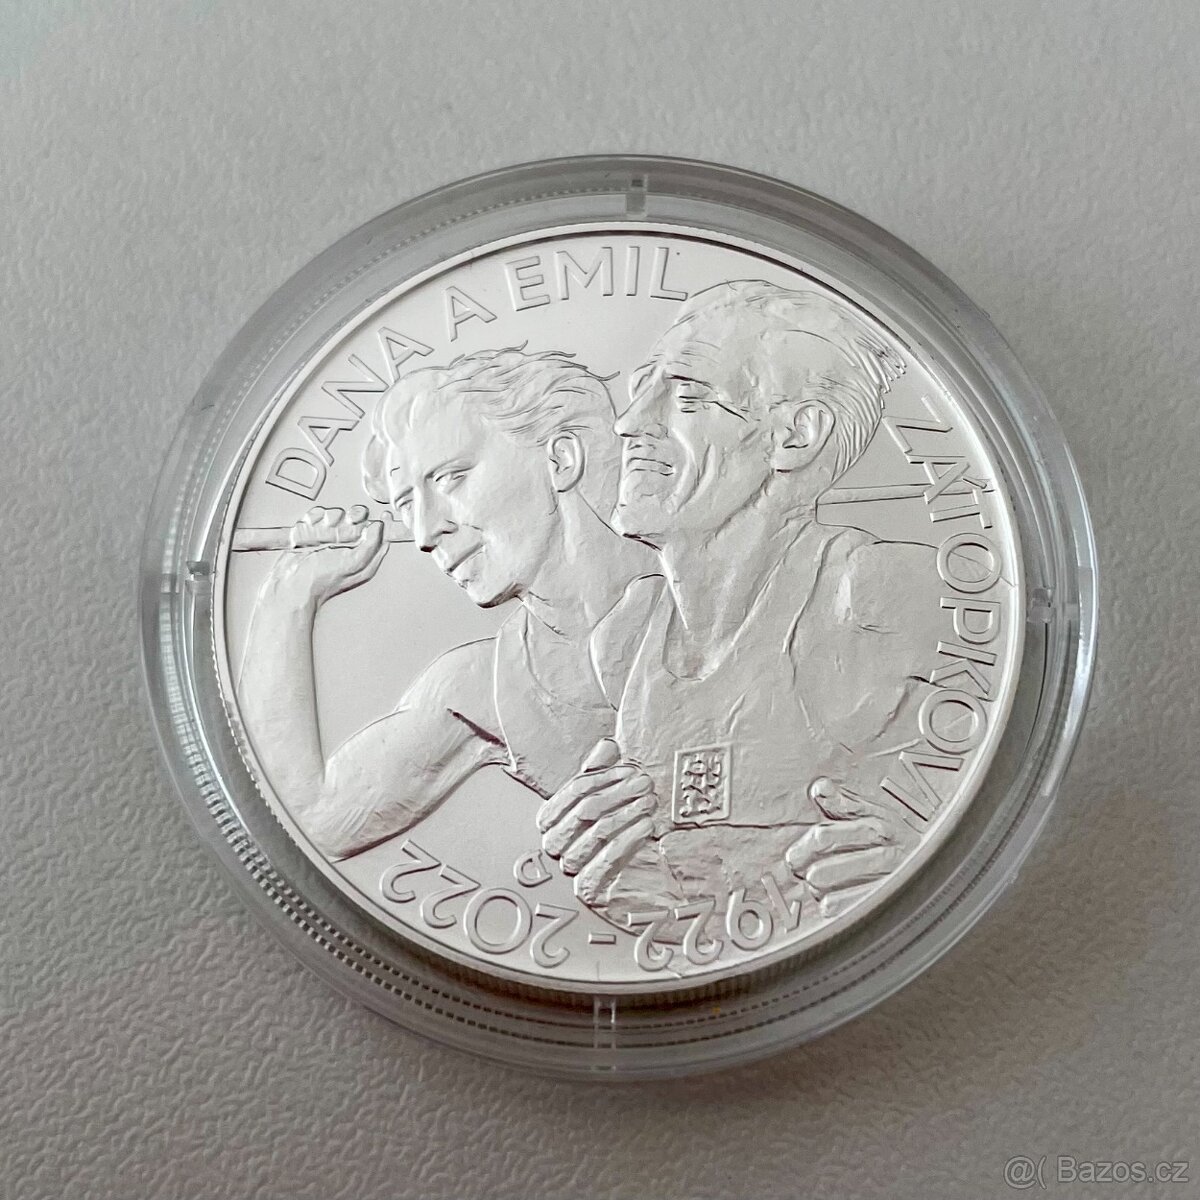 Stříbrná mince 200 Kč 2022 Dana Zátopková, Emil Zátopek bk